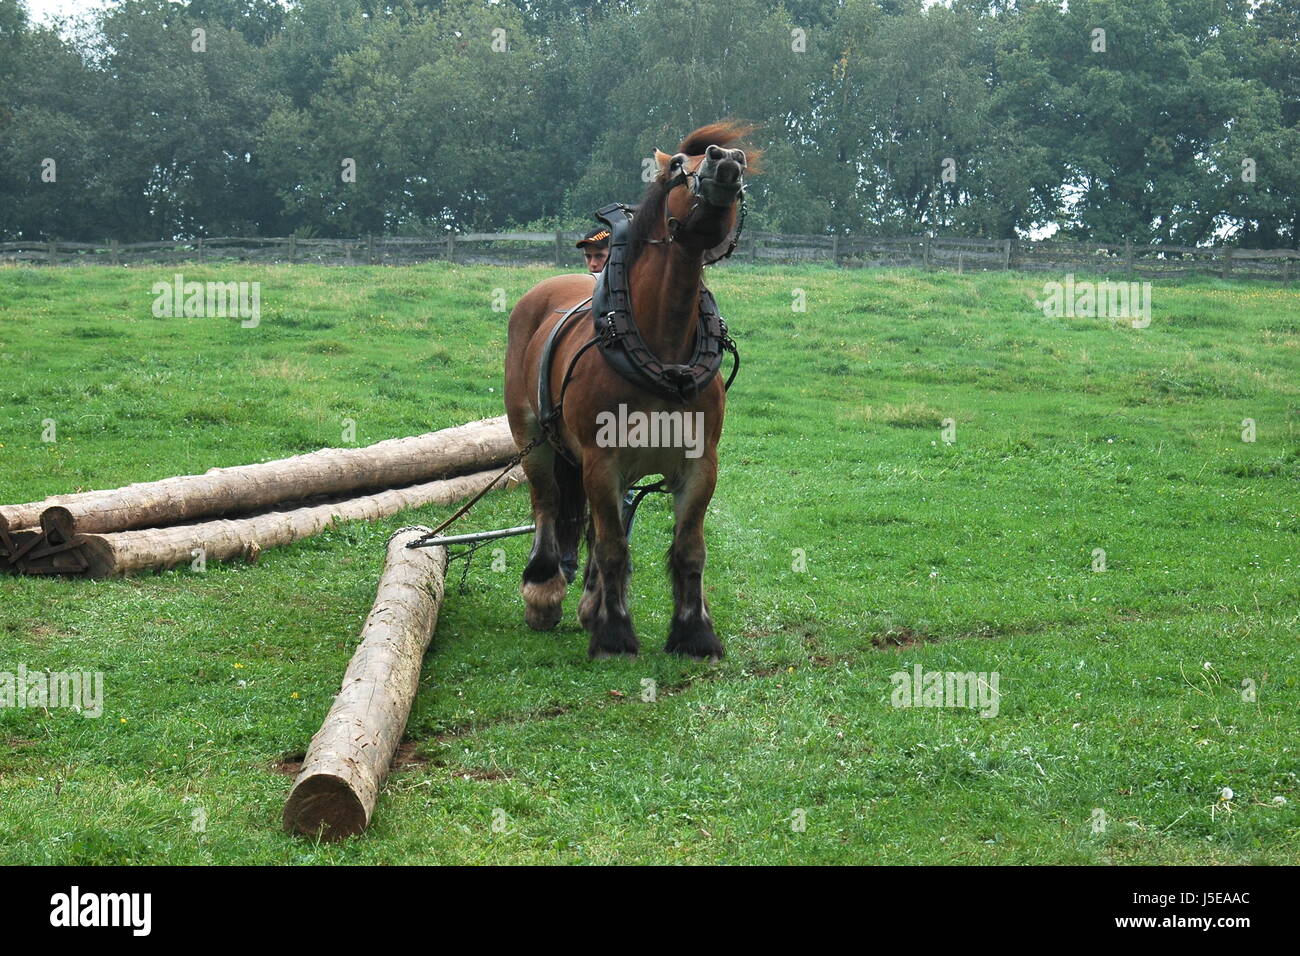 Tronc cheval Cheval Cheval contre l'arrière pour donner une colonne vertébrale rckepferd meadow jerk Banque D'Images